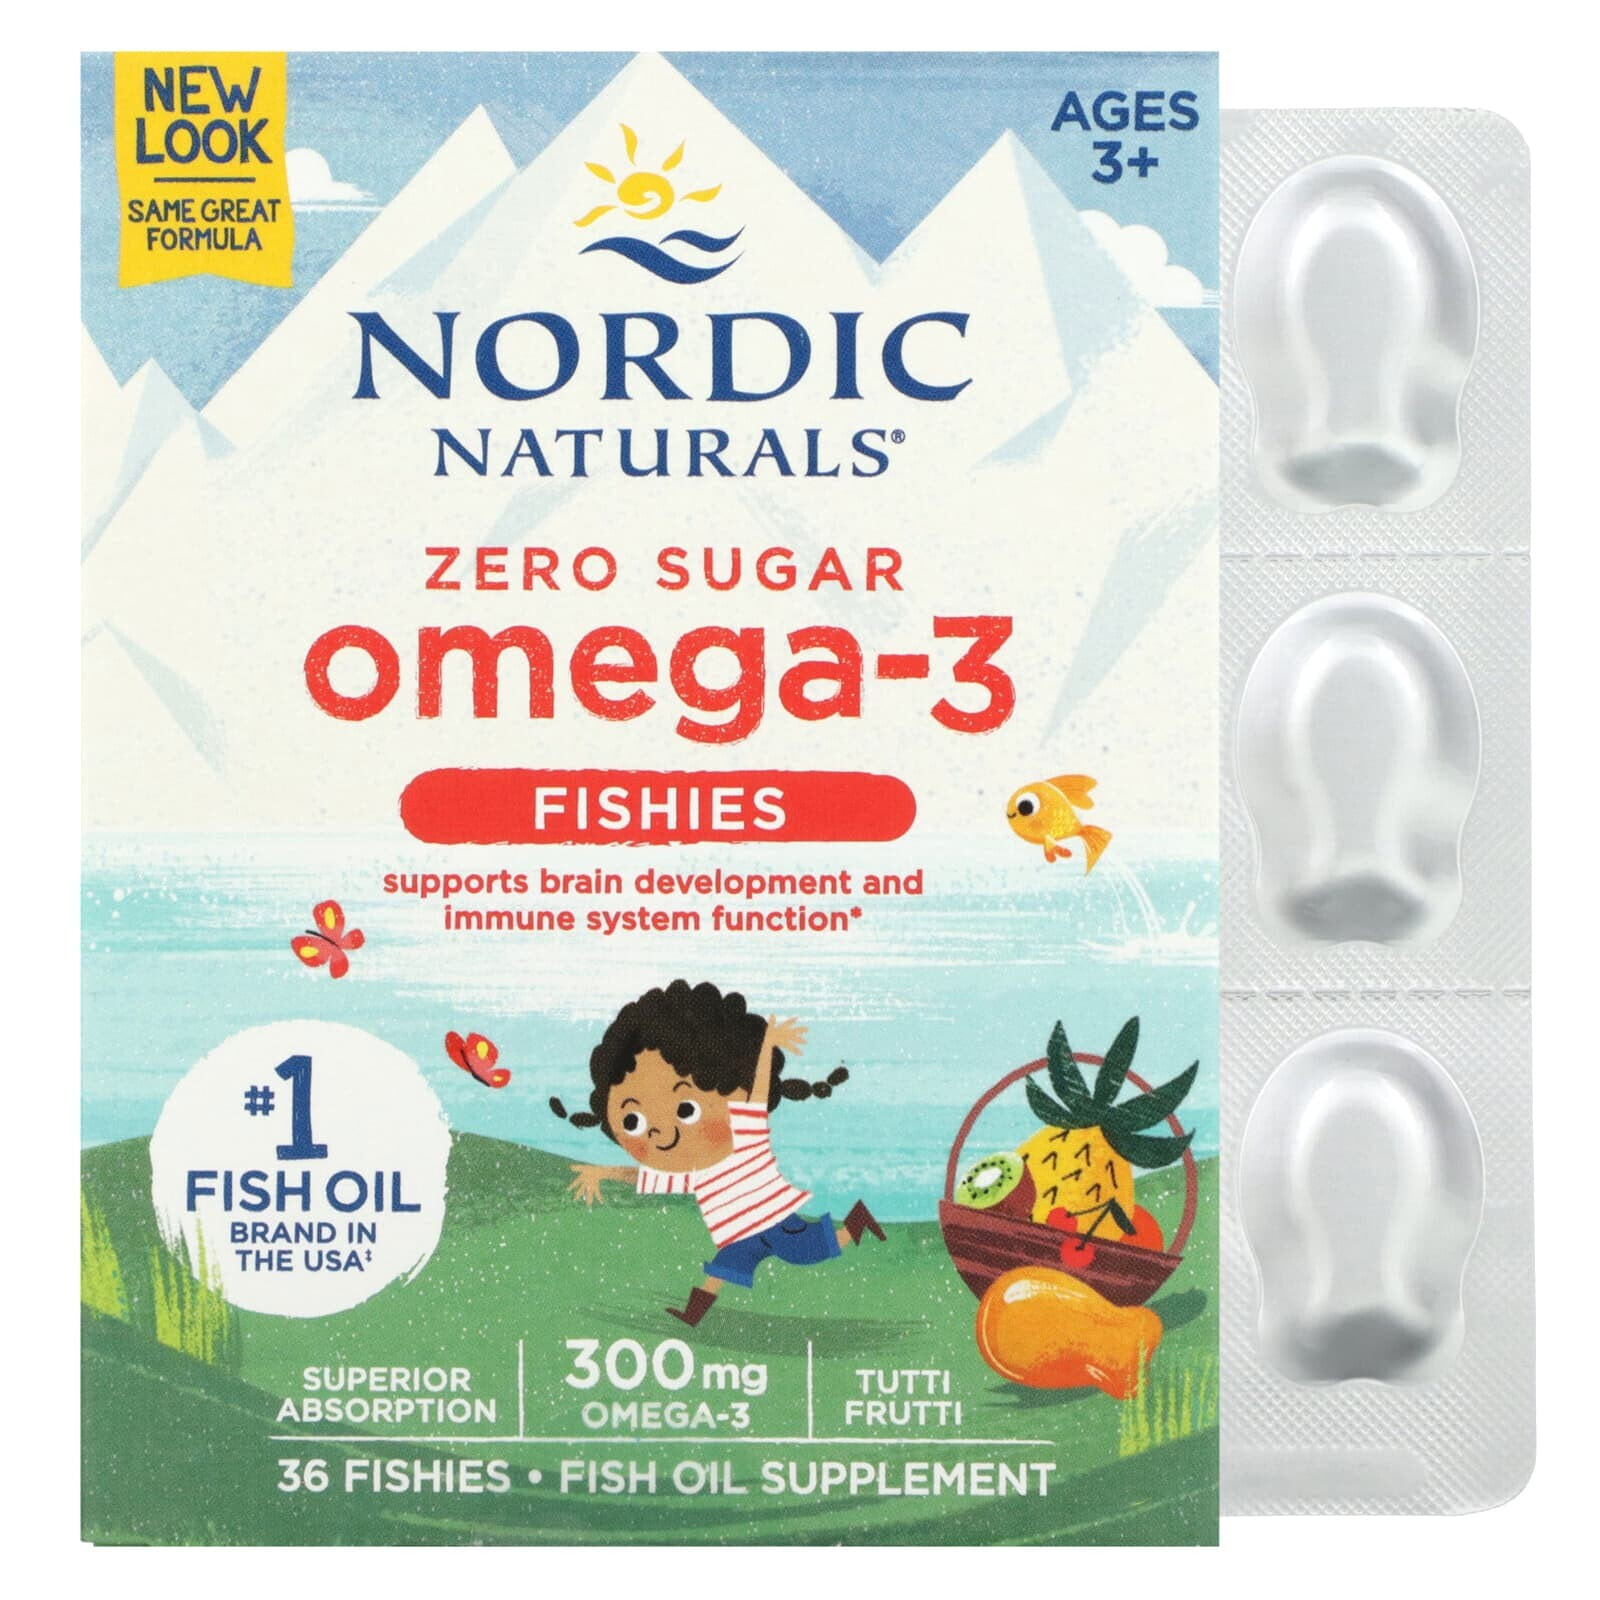 Нордик Натуралс, Nordic Omega-3 Fishies, рыбки с омега-3, для детей от 2 лет, вкус тутти-фрутти, 300 мг, 36 рыбок